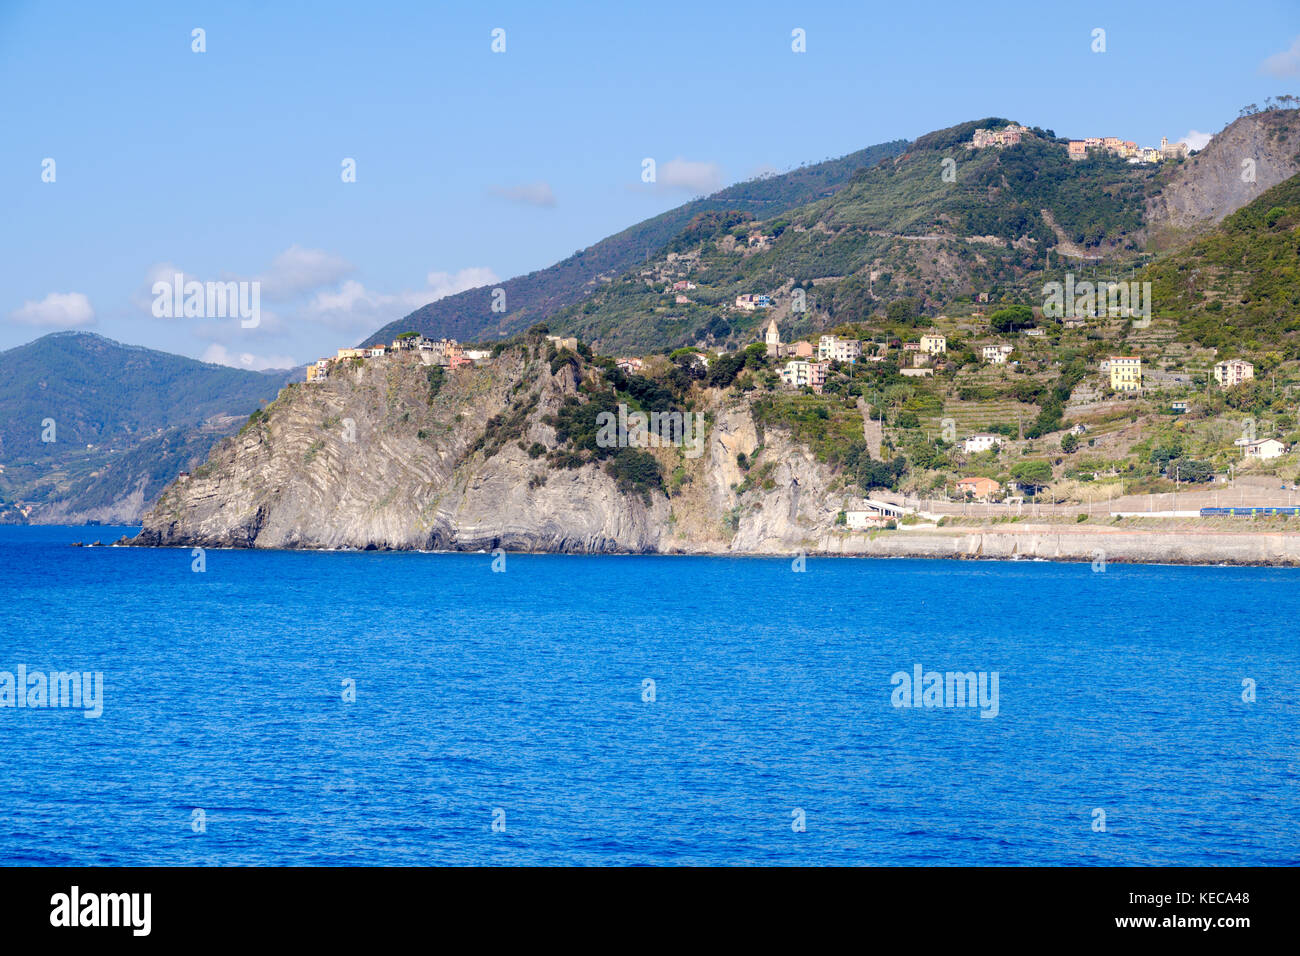 view of the Cinque Terre coastline with town of Corniglia from Manarola, Cinque Terre, Liguria, Italy Stock Photo